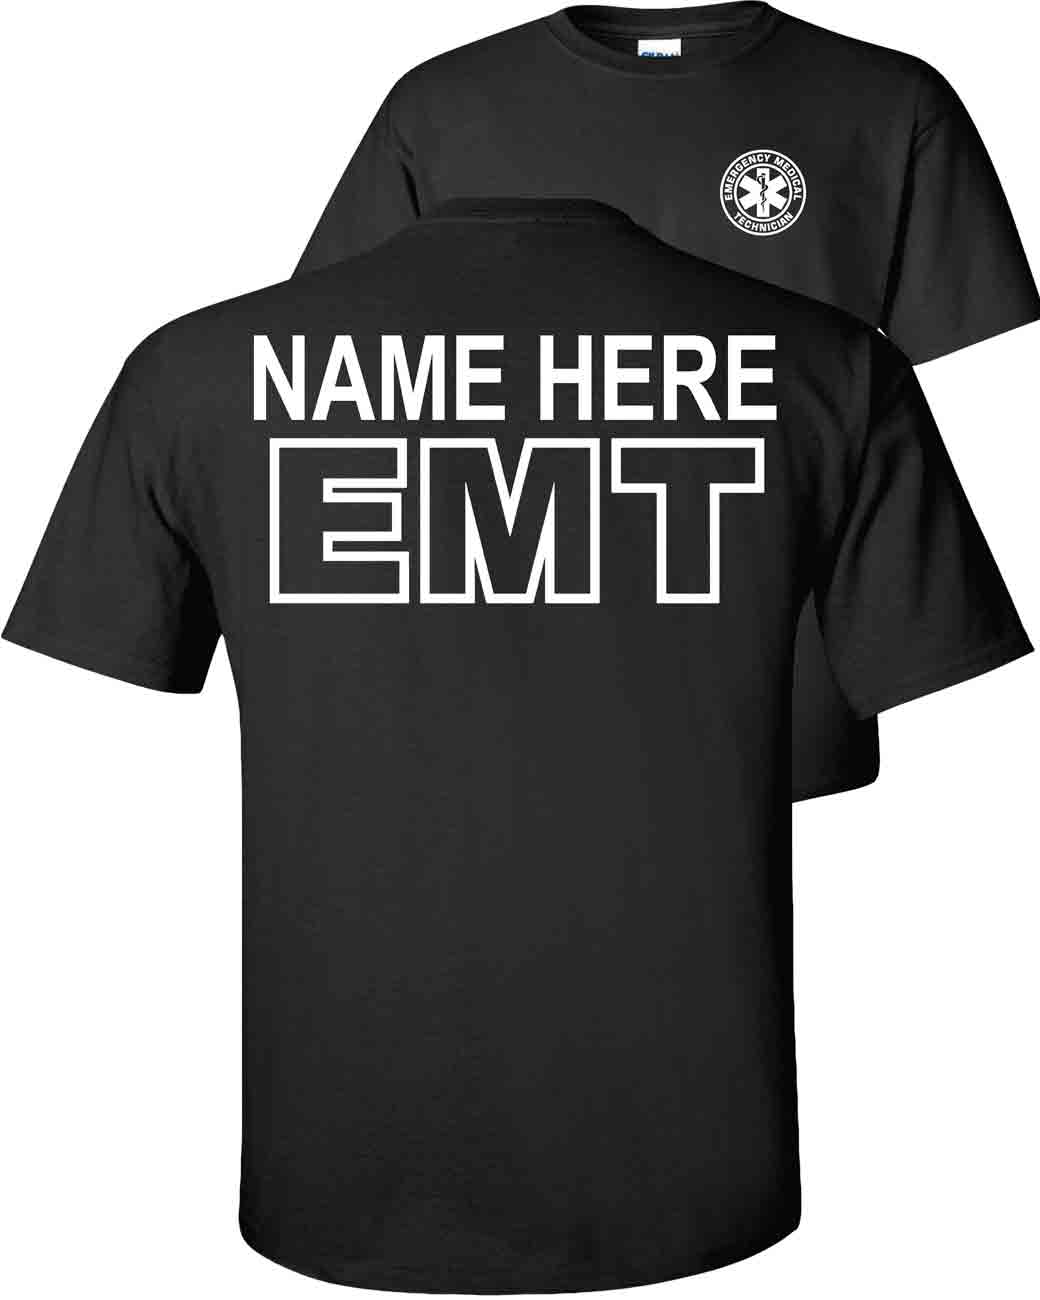 emt-short-sleeve-black-custom-name1.jpg